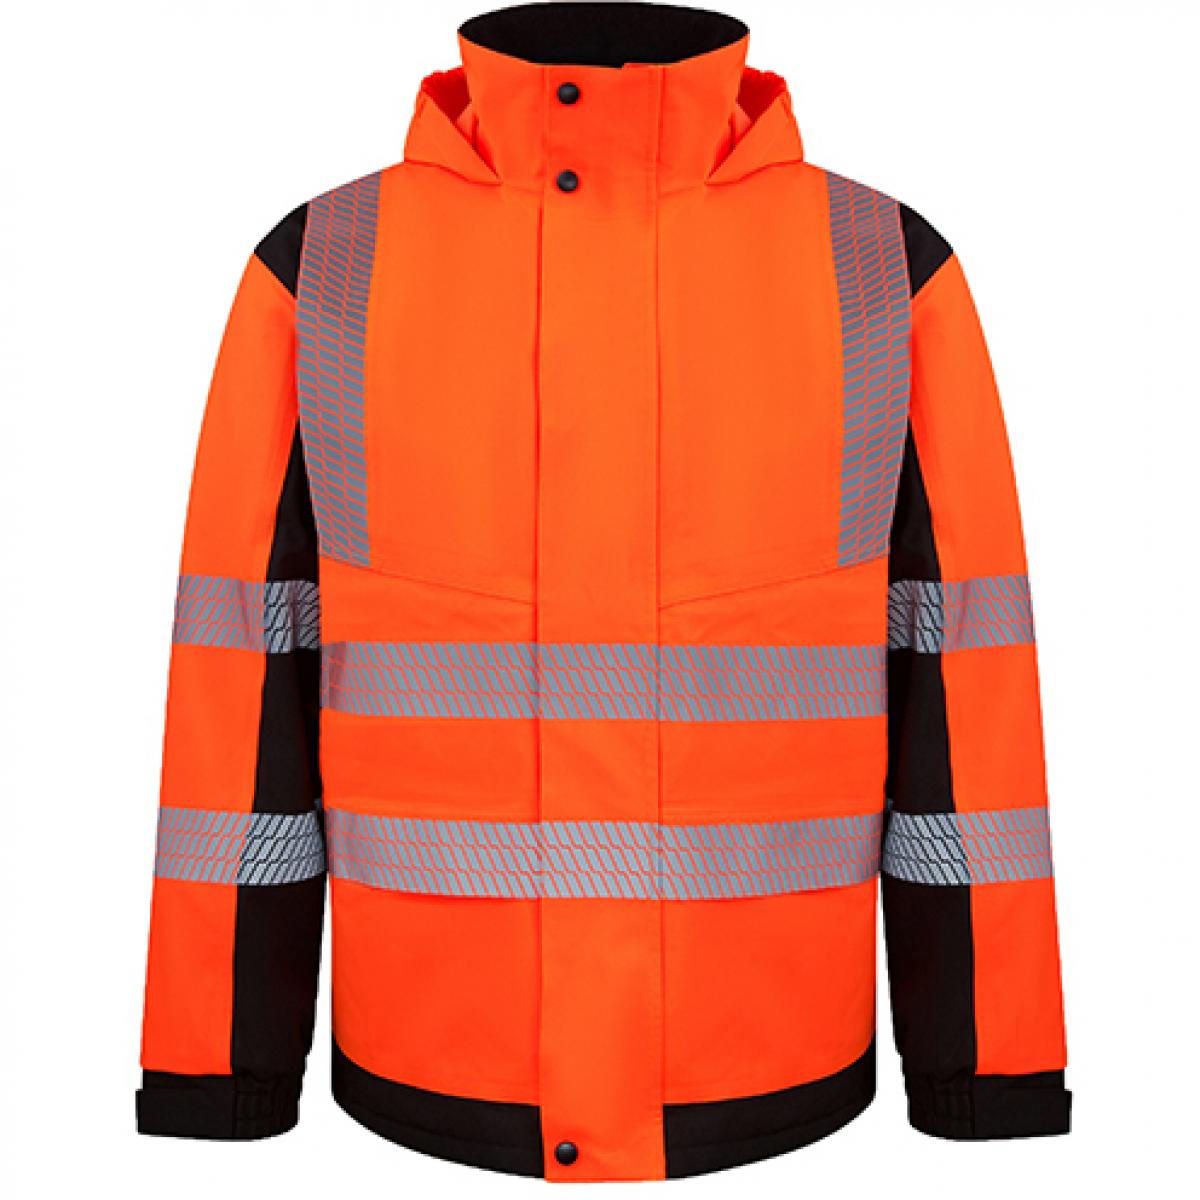 Hersteller: Korntex Herstellernummer: KXBRSSHRJ Artikelbezeichnung: Premium Hi-Vis Broken Reflex Softshell Jacket Copenhagen Farbe: Signal Orange/Black